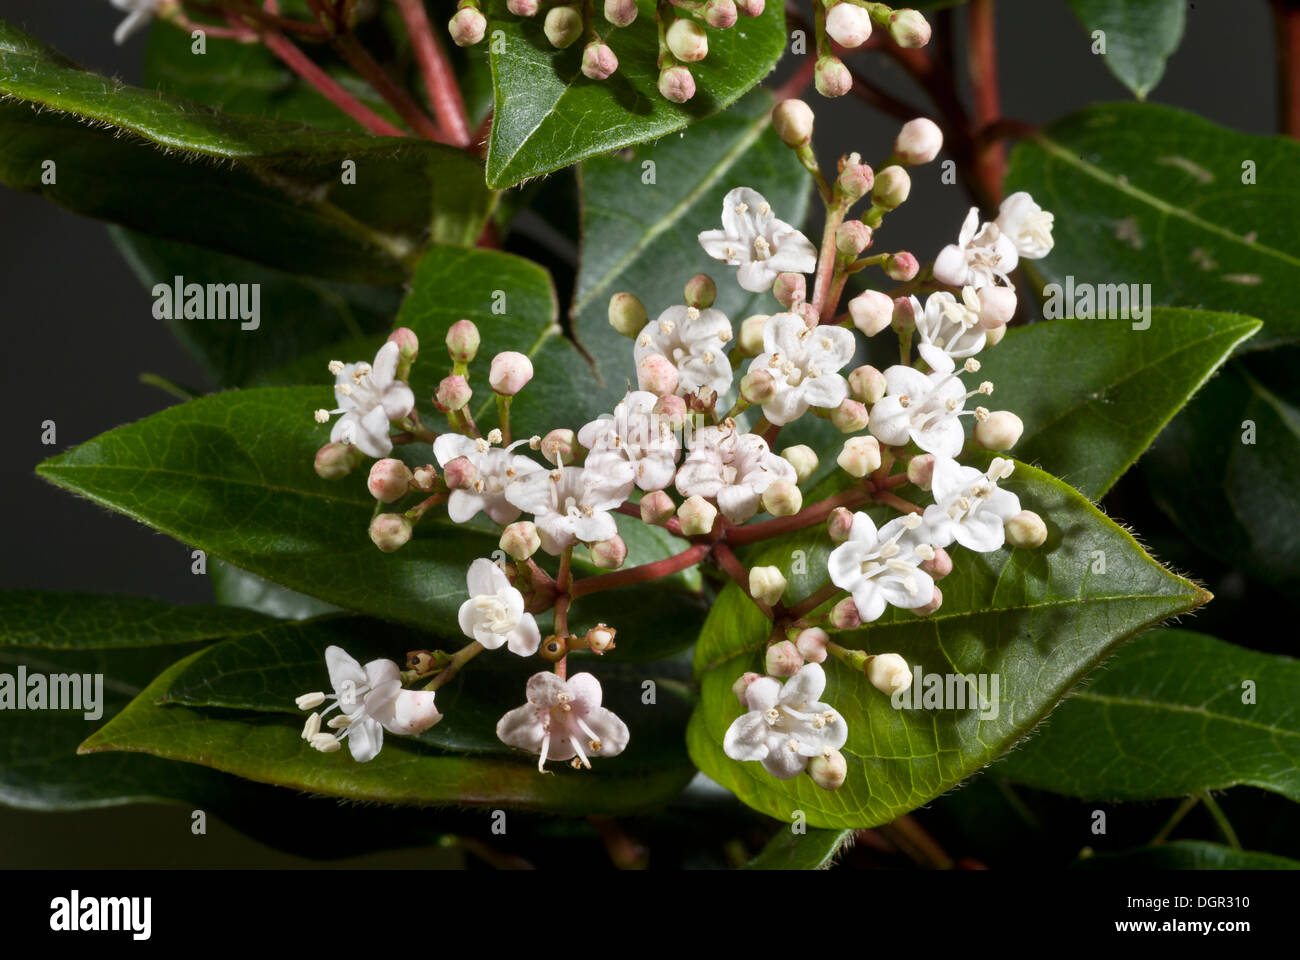 Laurustinus, Viburnum tinus - evergreen winter-flowering shrub in flower. Garden, Dorset. Stock Photo